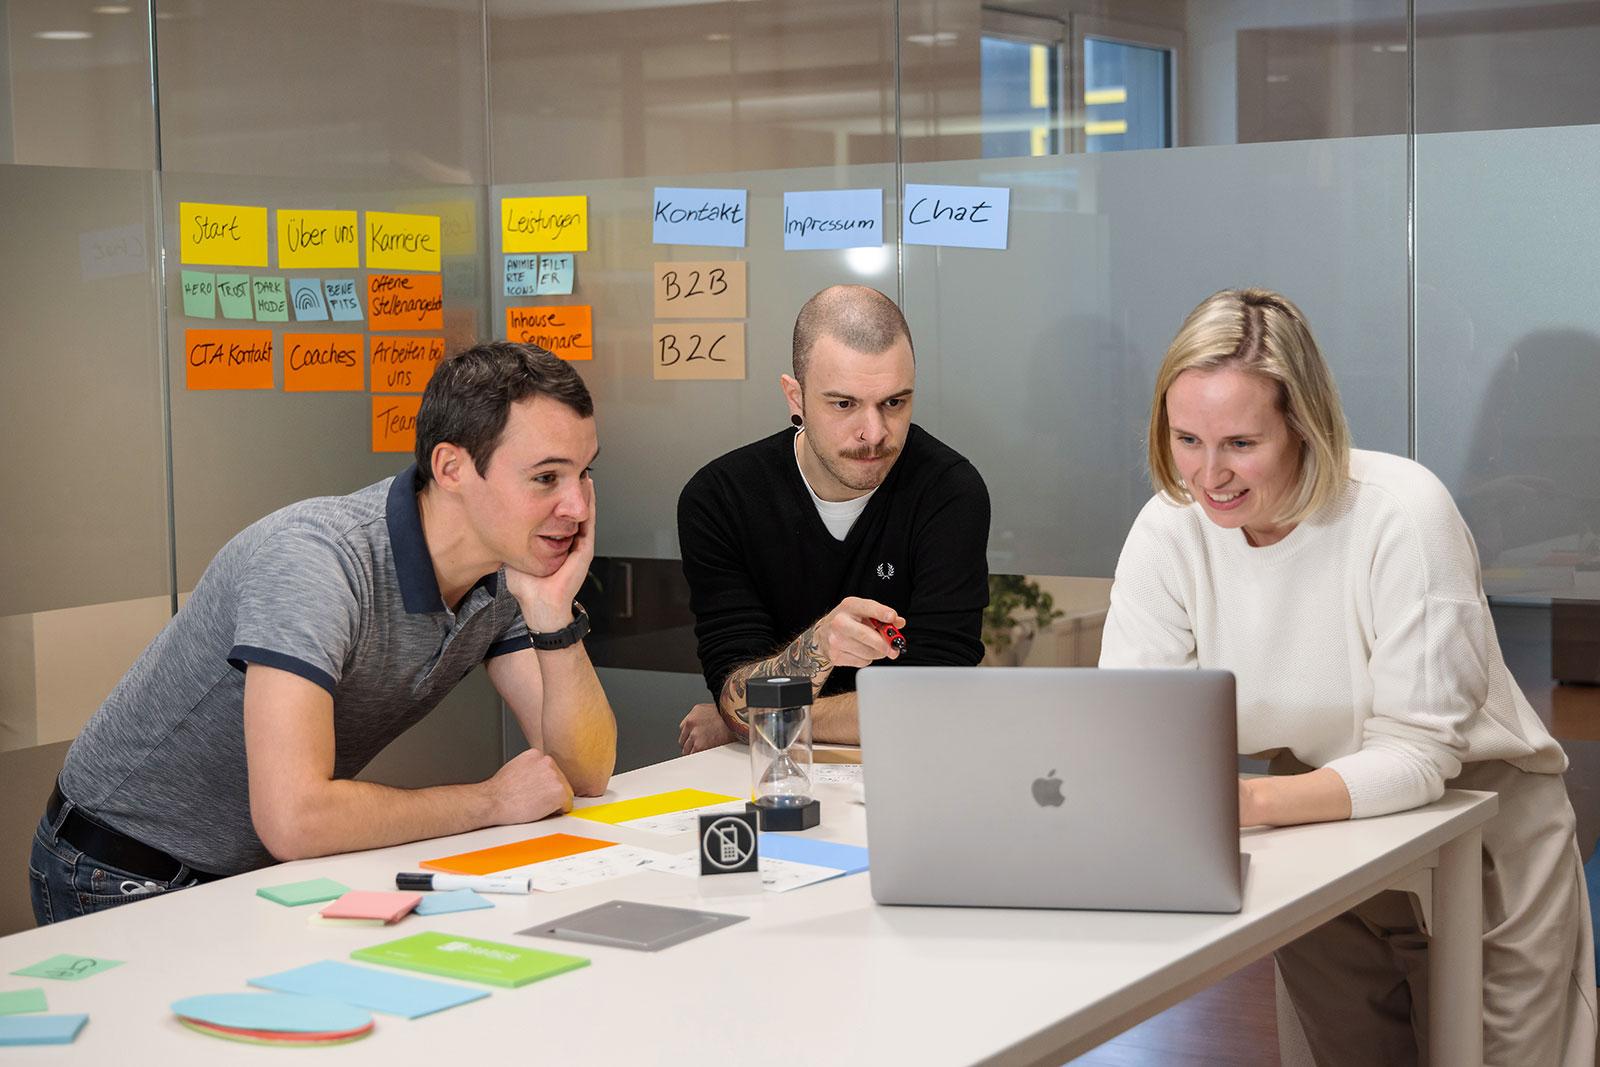 Kollegen und Kolleginnen beim Brainstorming in einem Strategie- und Markenworkshop